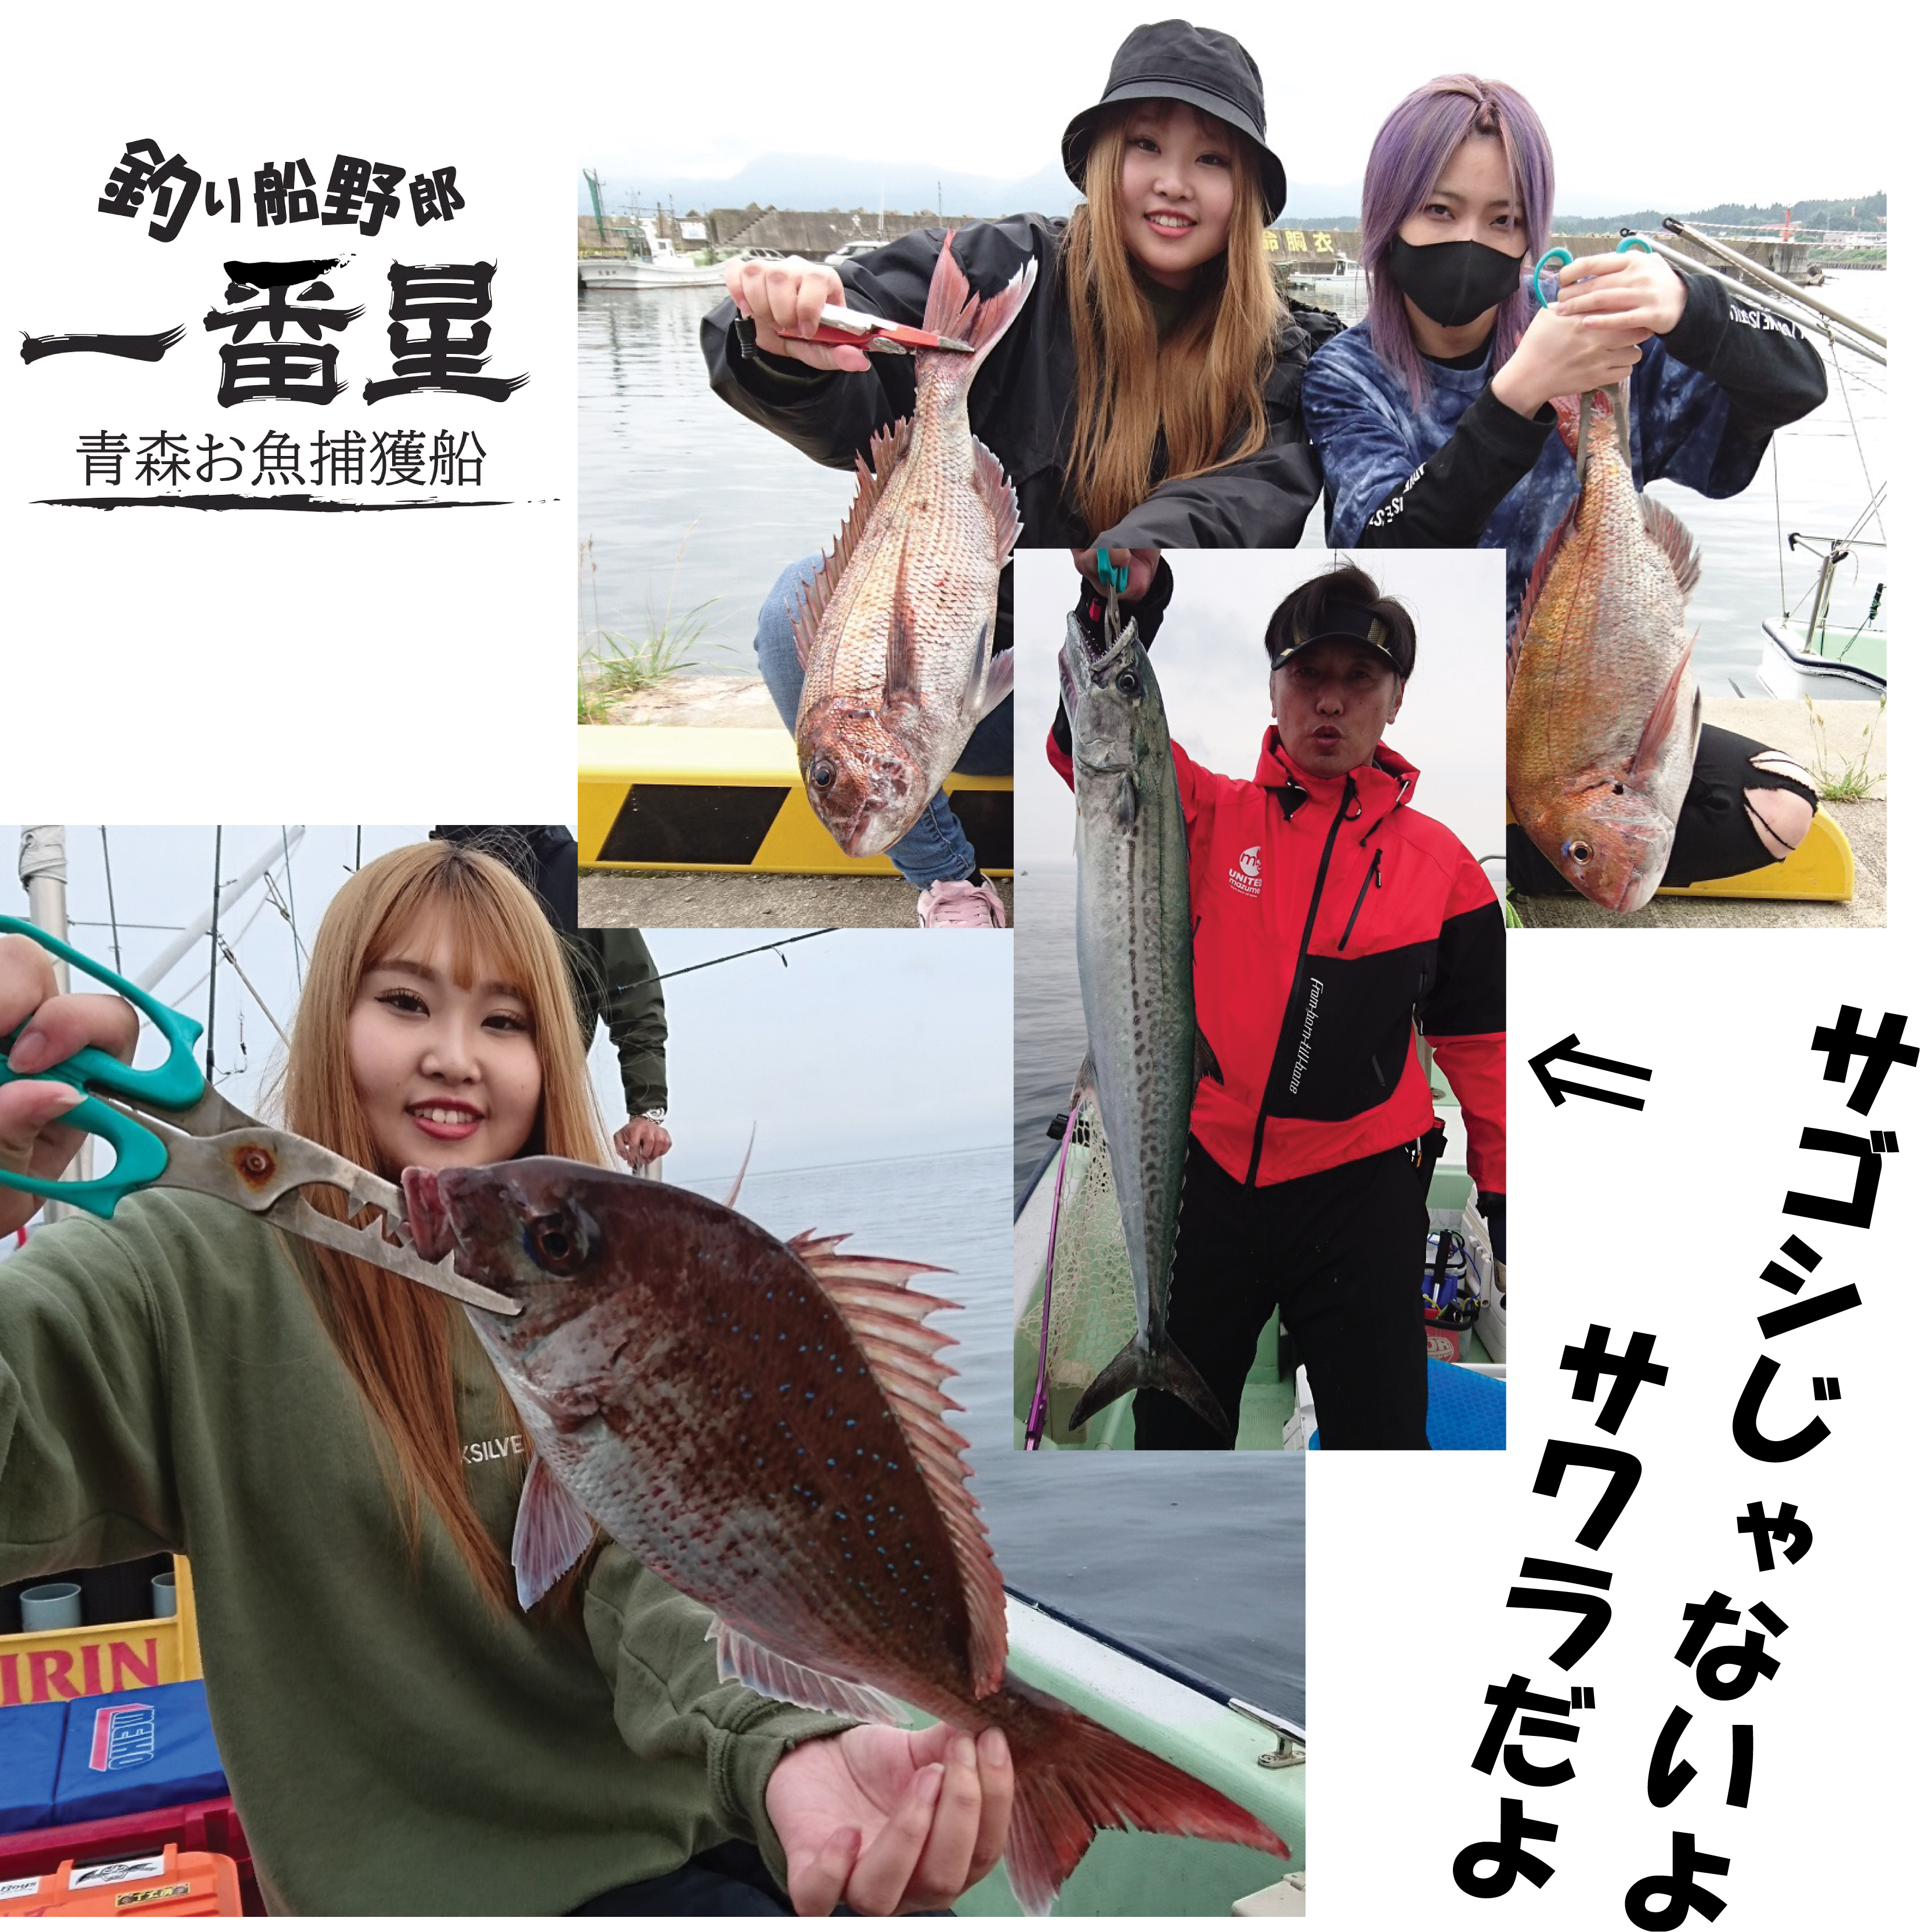 ブログ 青森 釣り 青森県内の個人やクラブで運営している釣り情報のホームページやブログ